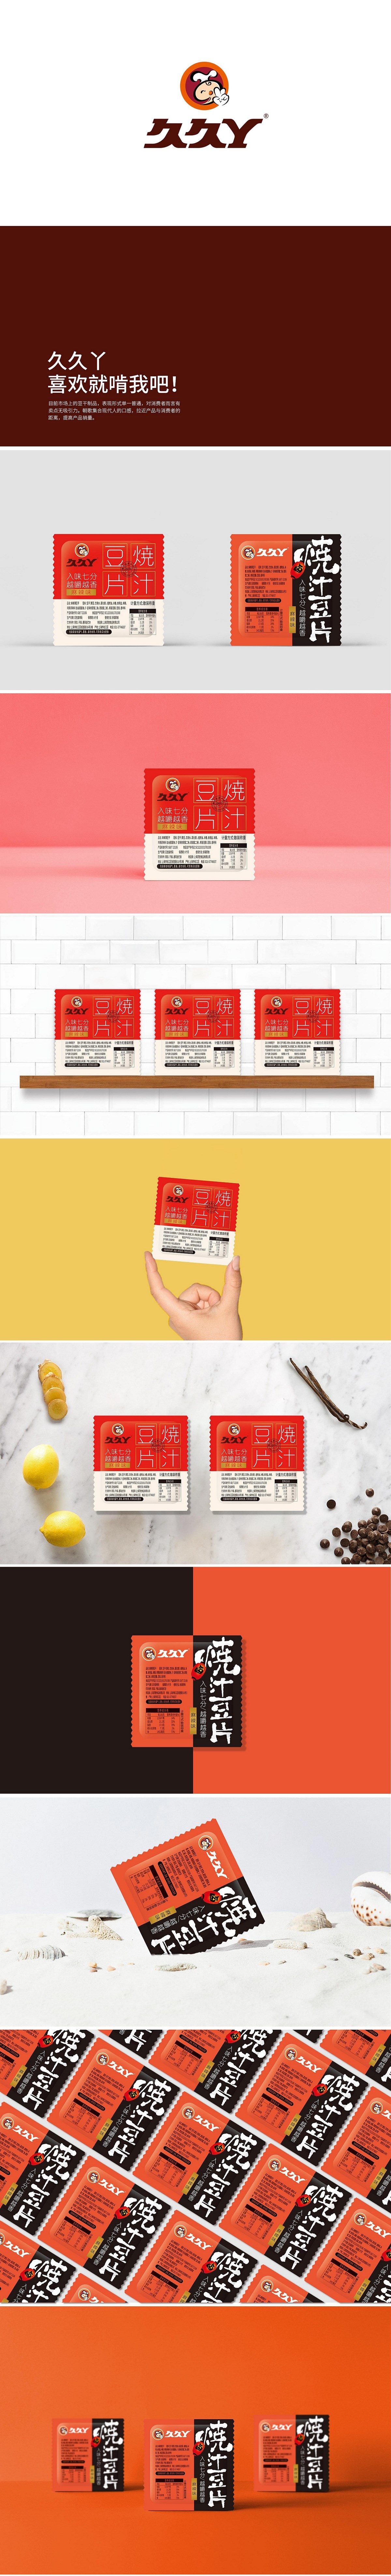 上海久久丫豆干鹌鹑蛋系列产品包装